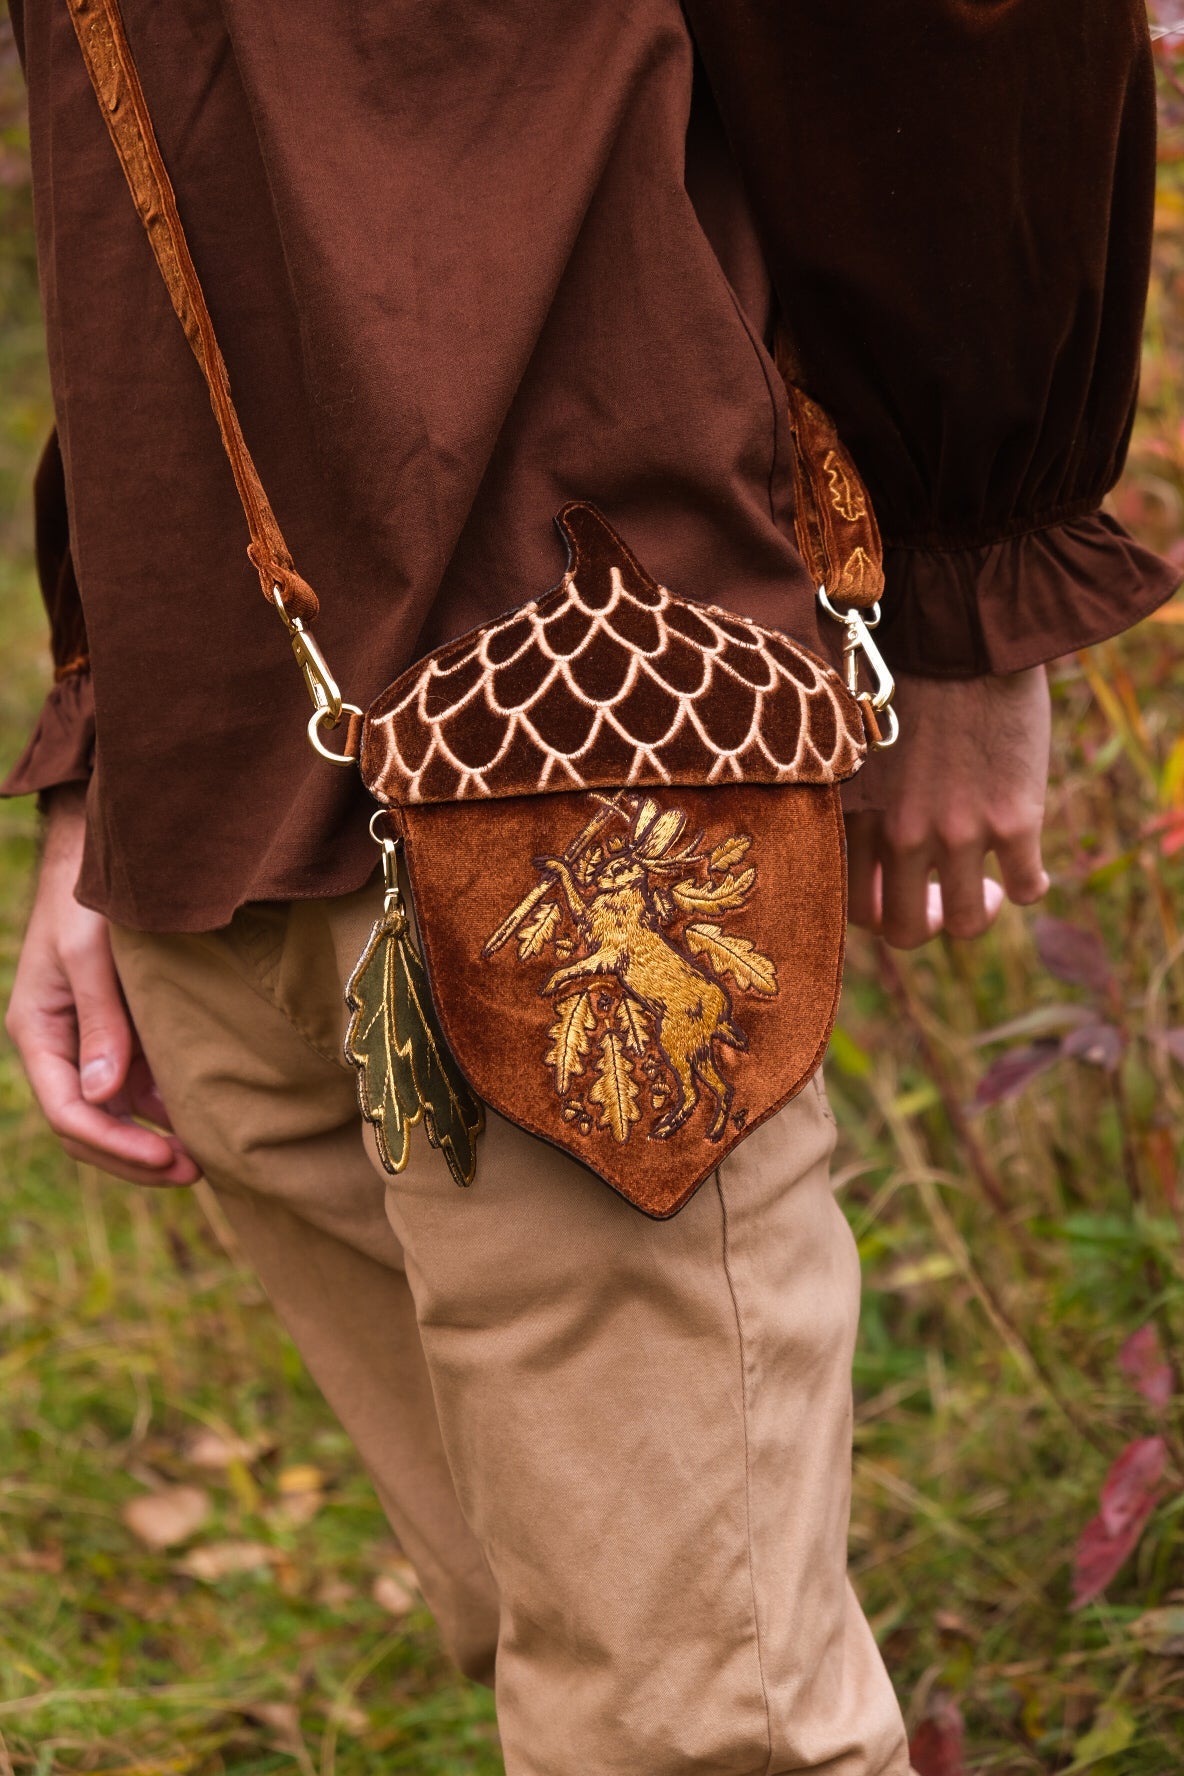 Crochet acorn bag by HolsteinFreestyler on DeviantArt